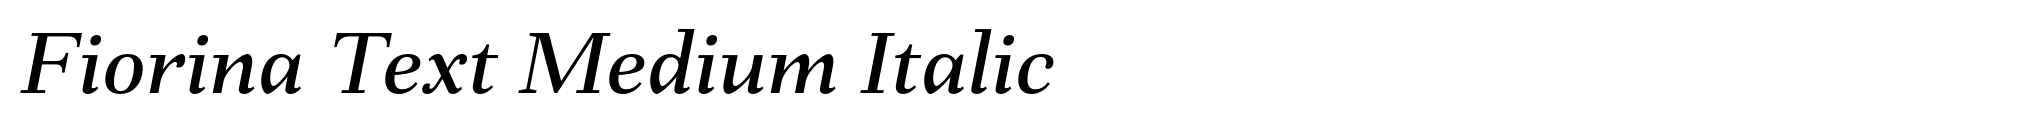 Fiorina Text Medium Italic image